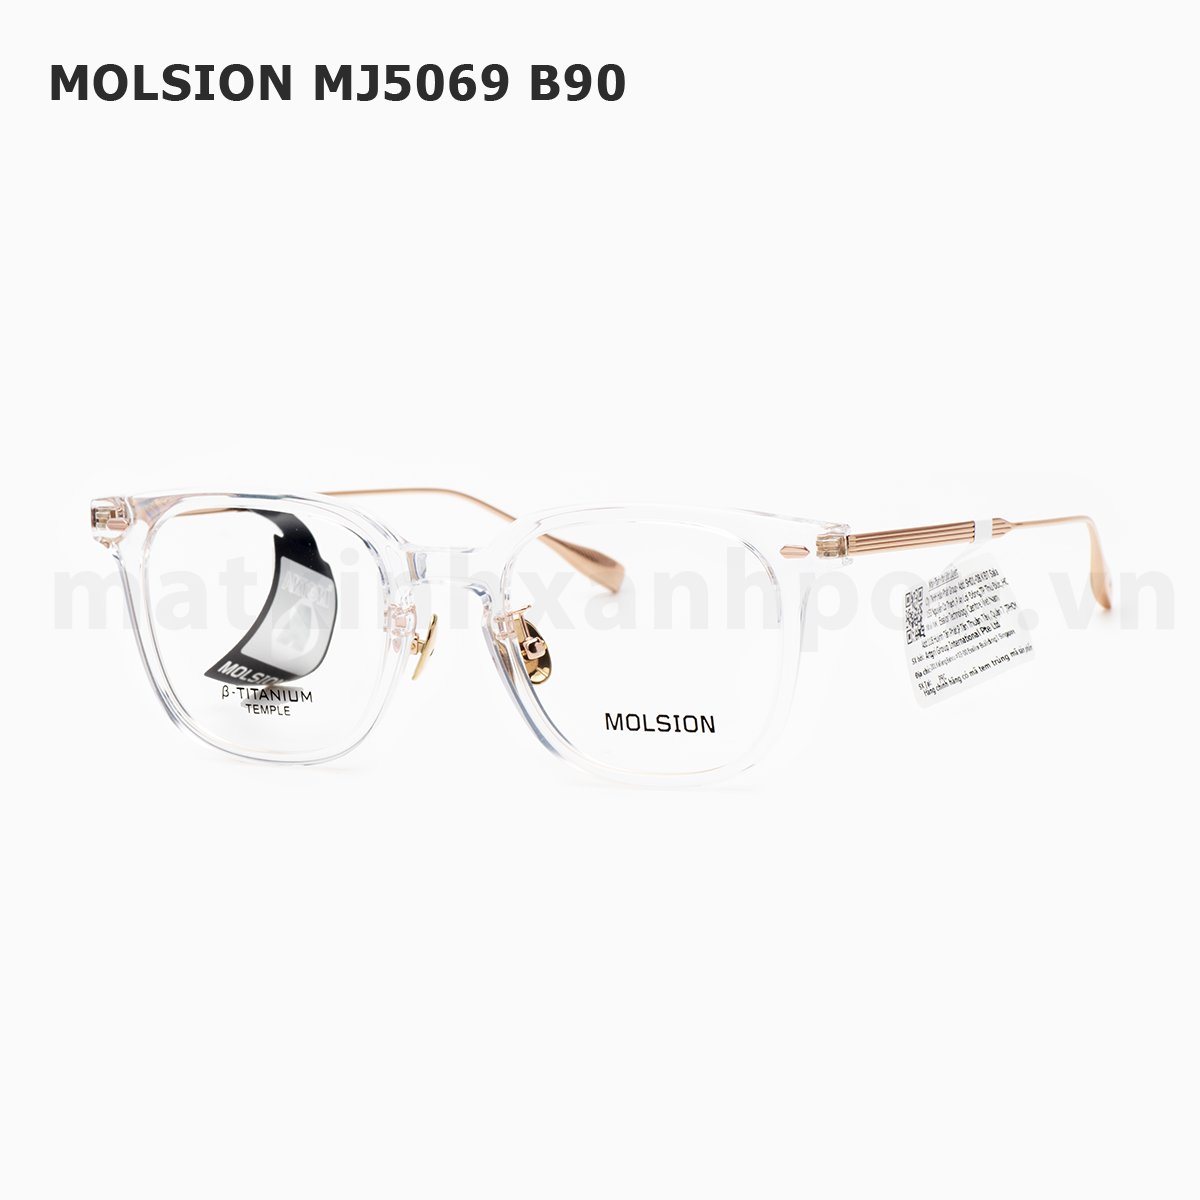 Molsion MJ5069 B90